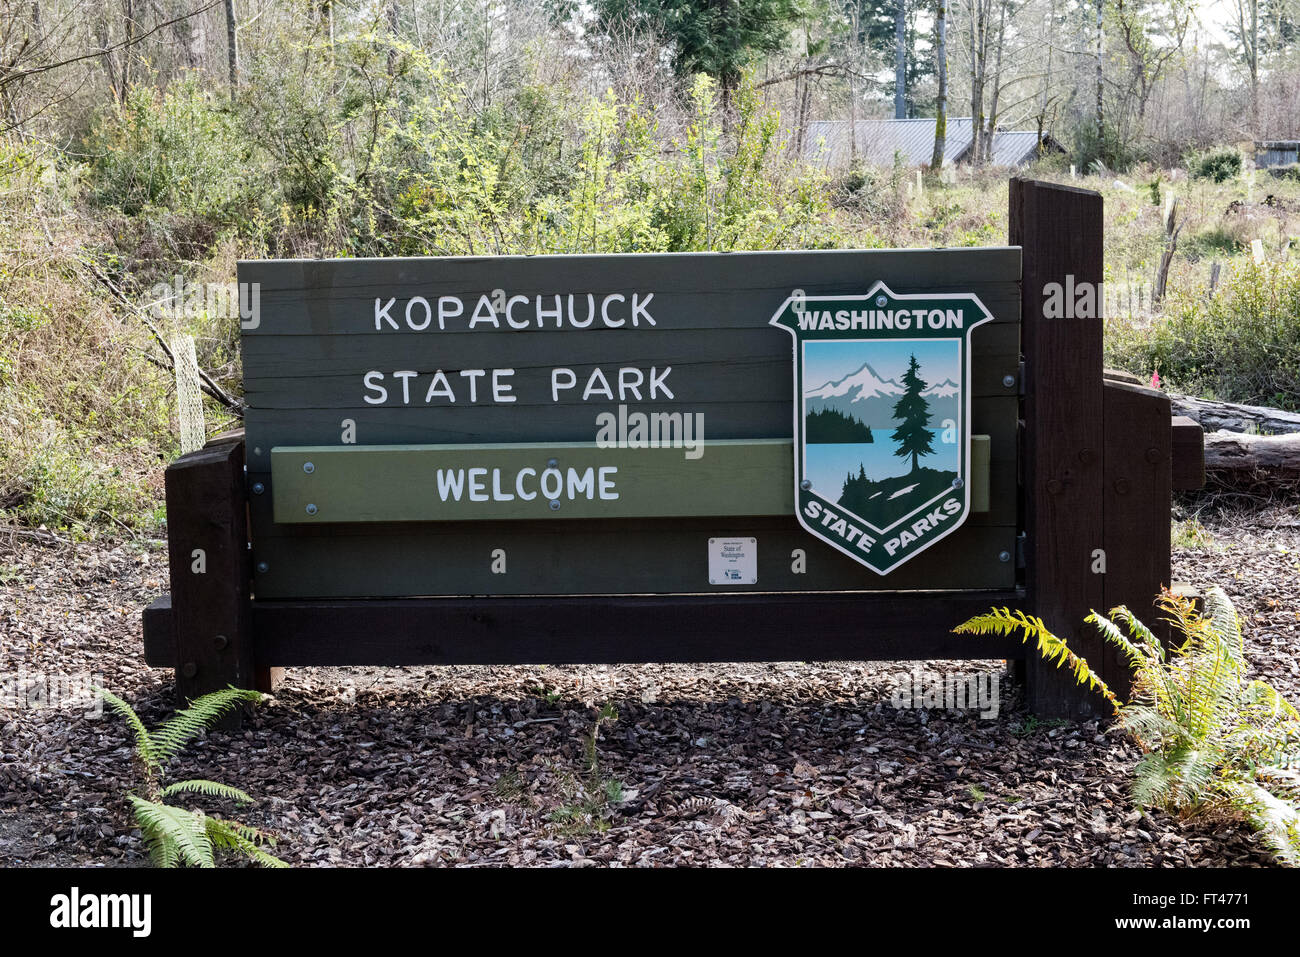 Kopachuck State Park Tide Chart